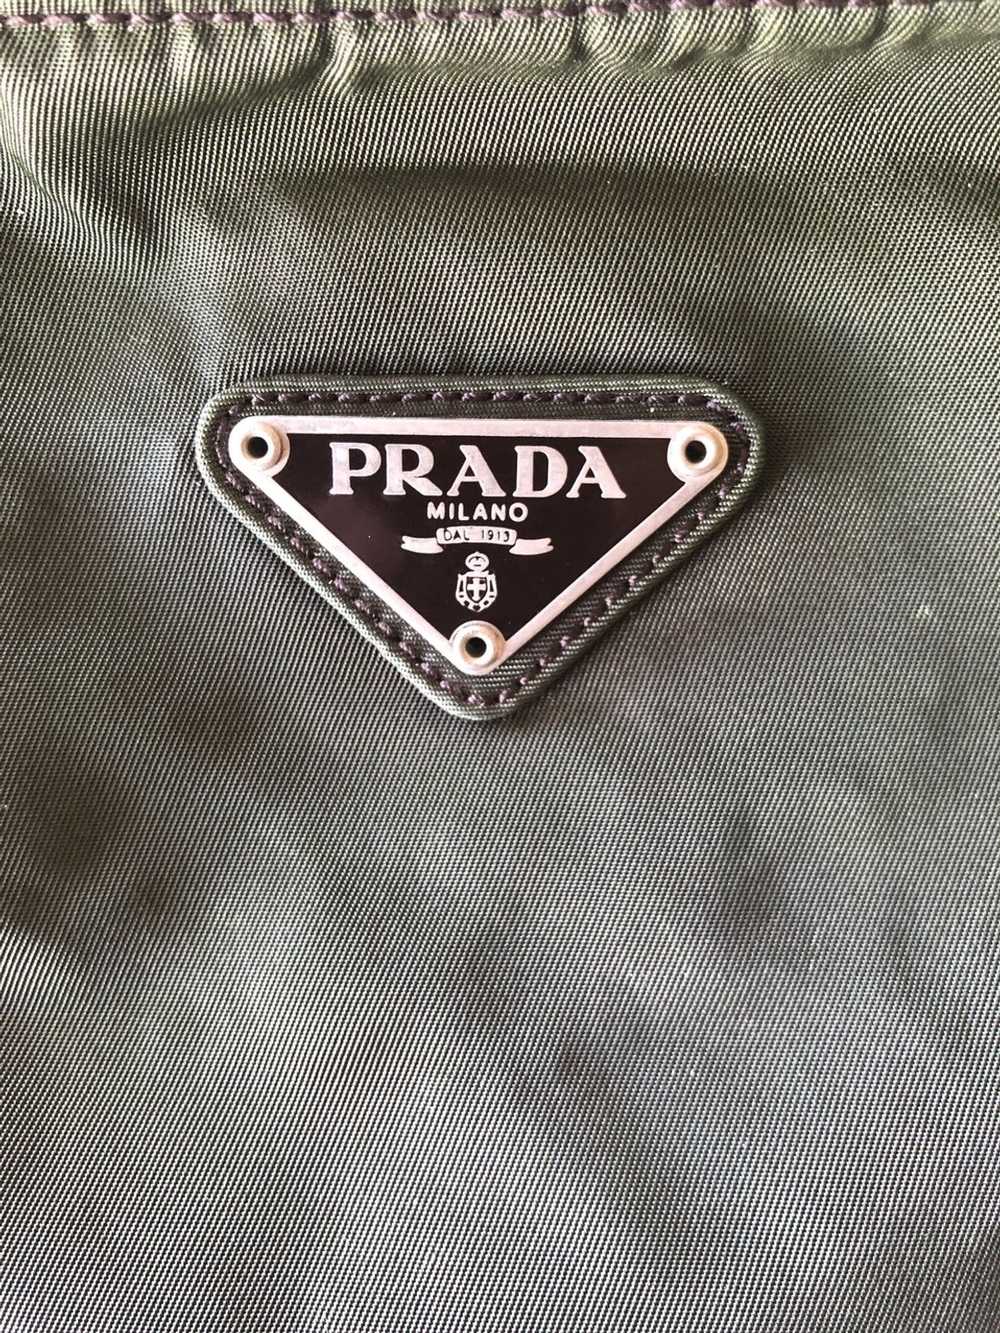 Prada Vintage green Prada shoulder bag - image 6